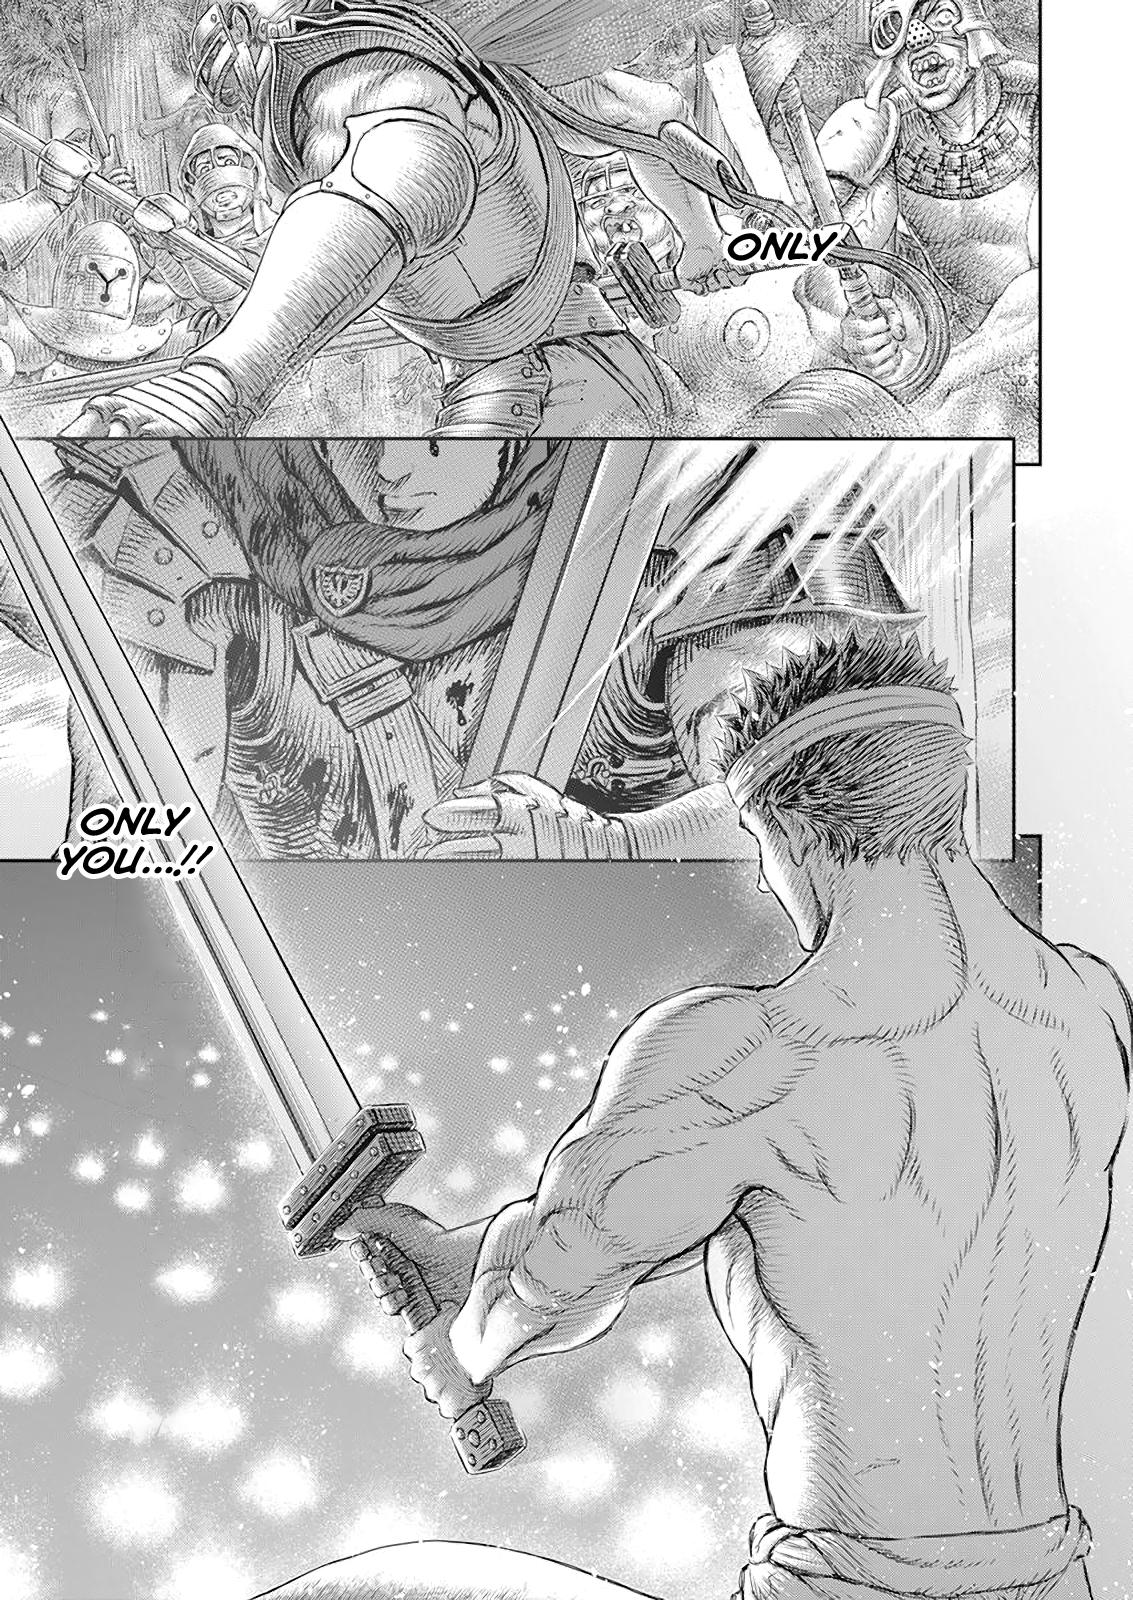 Berserk Manga Chapter 370 image 16